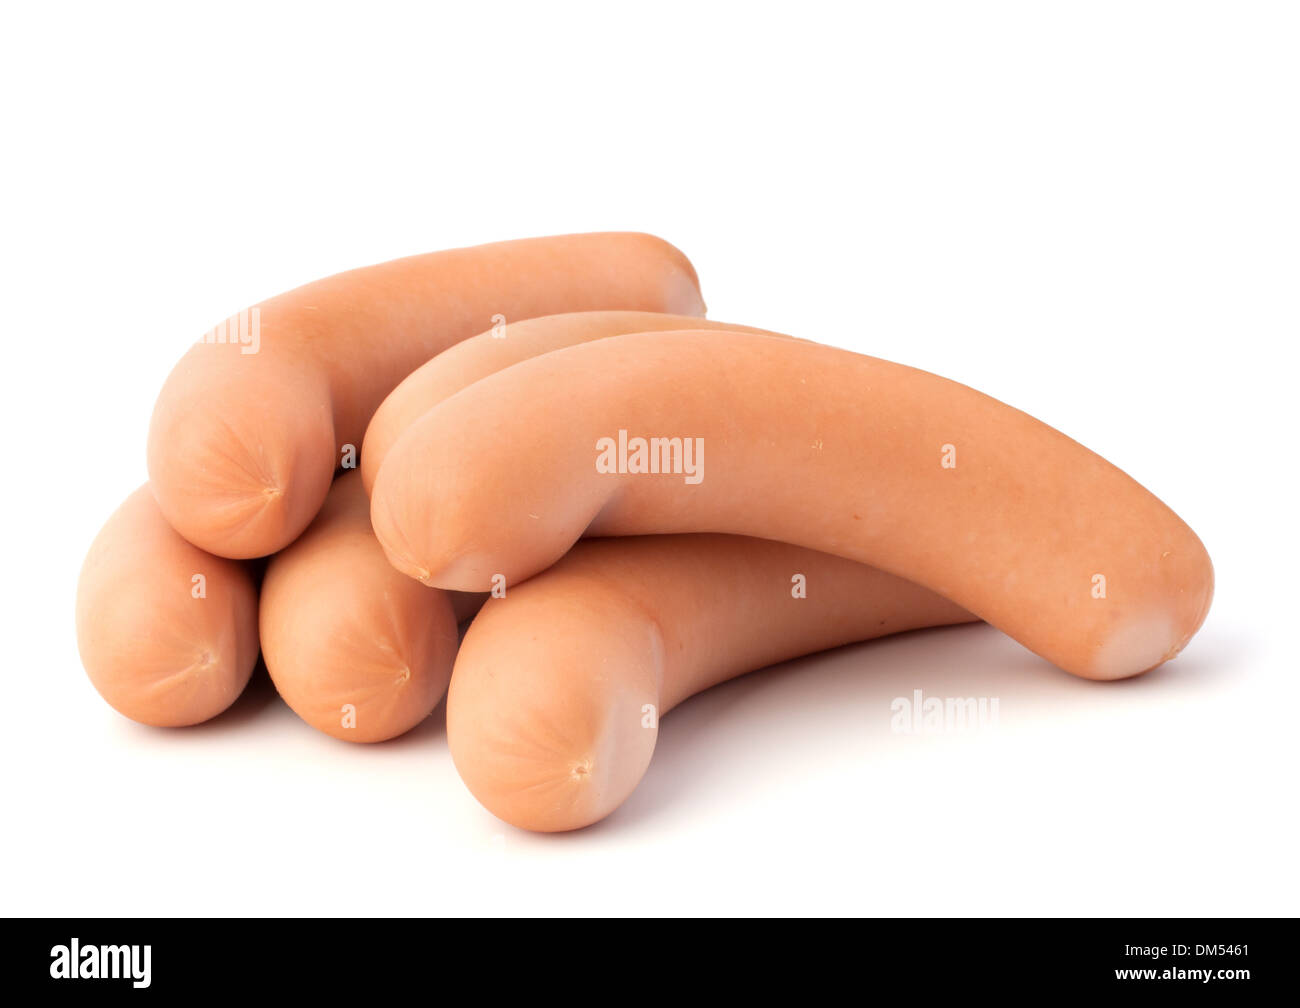 Frankfurter sausage isolated on white background Stock Photo